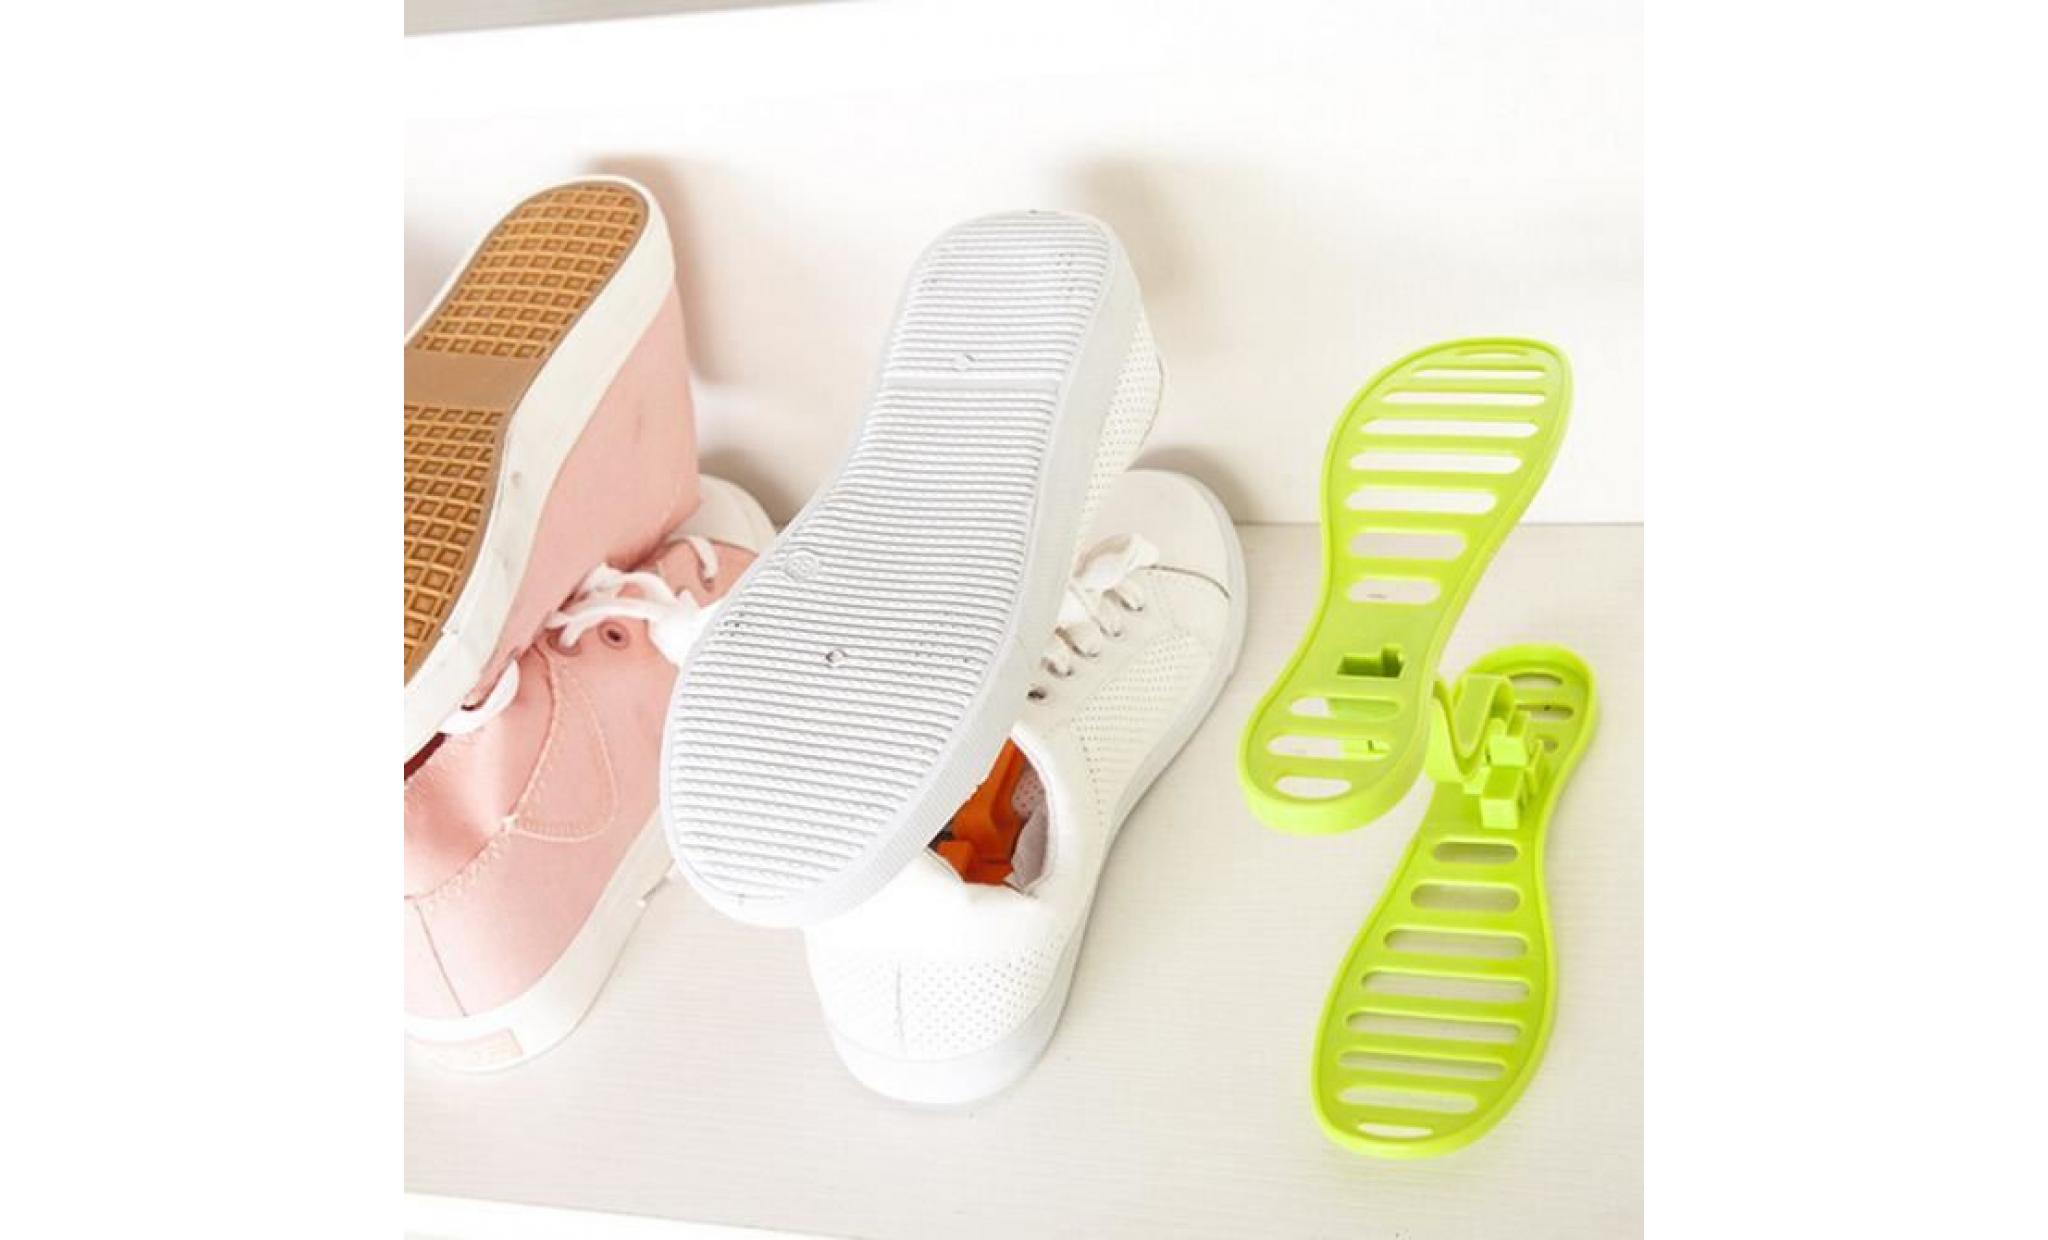 yxp60615645 chaussures porte chaussures creative shelf chaussures portatifs pour le ménage fournitures de stockage pas cher